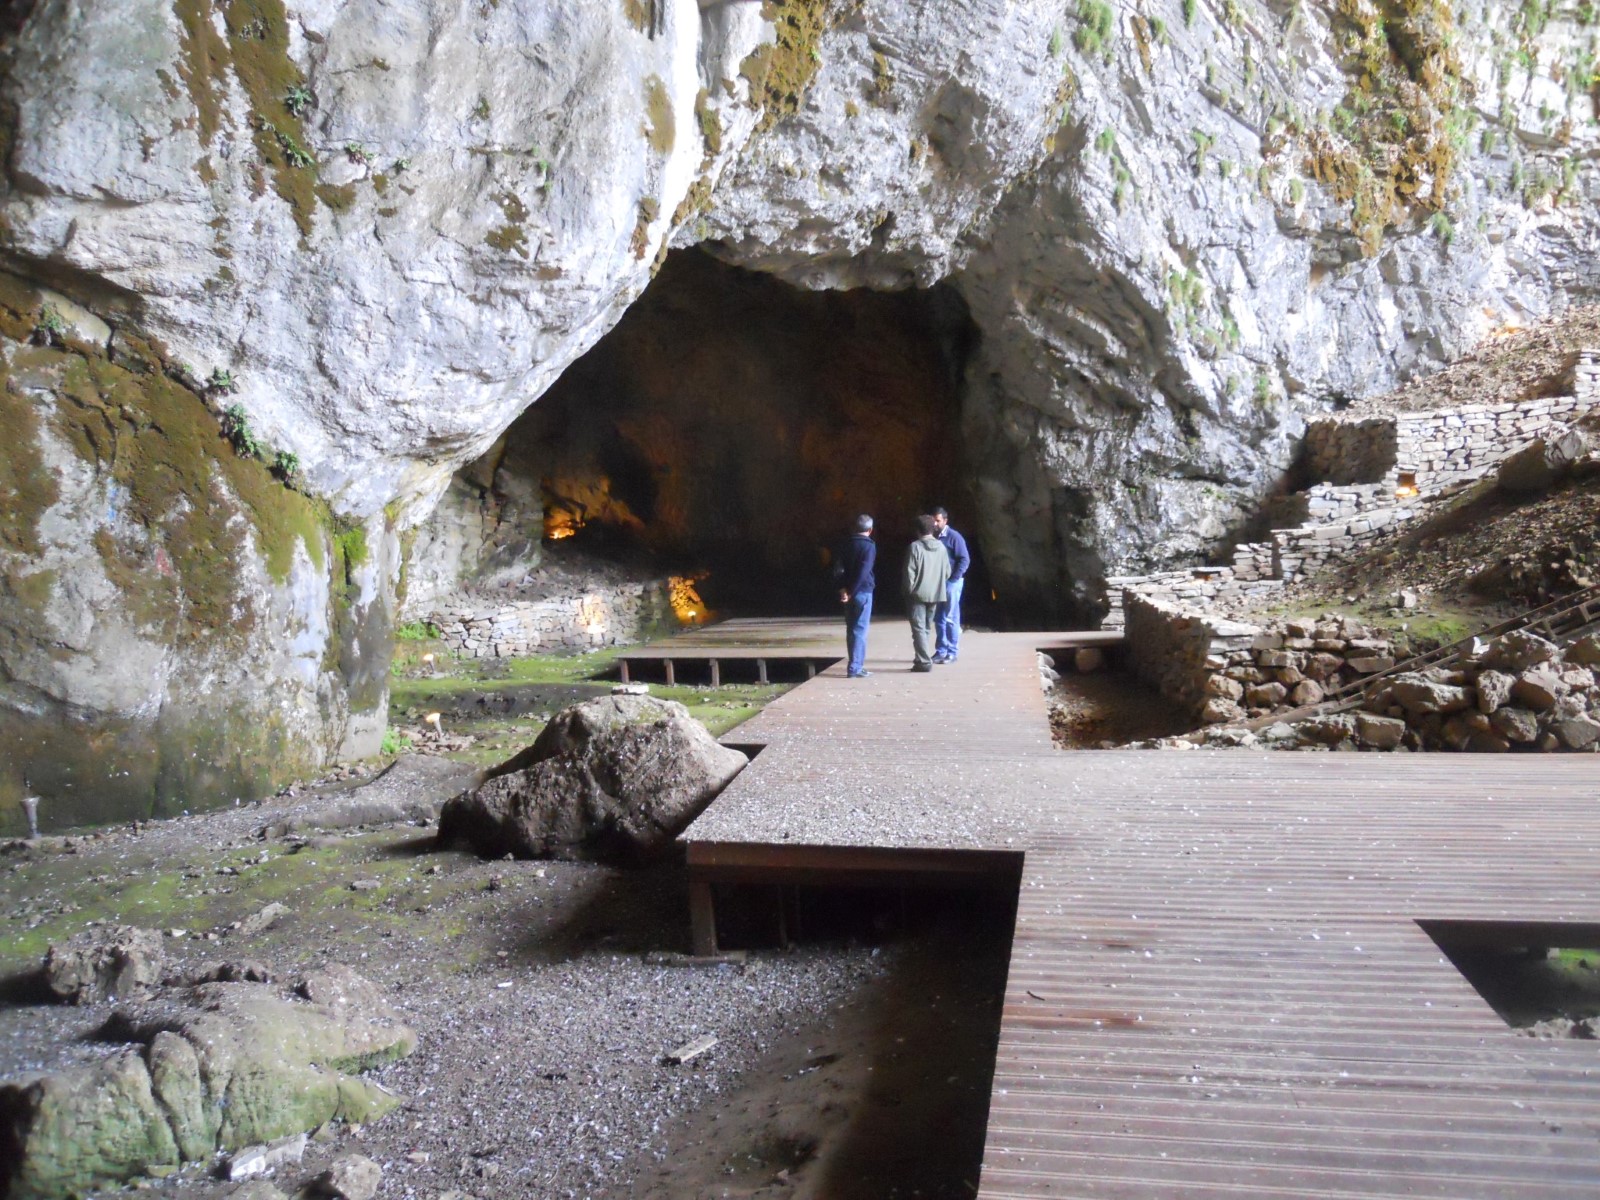 Ιδαίο Άντρο: Εξερευνώντας το μυθικό σπήλαιο όπου κατά την μυθολογία σώθηκε ο Δίας (βίντεο)